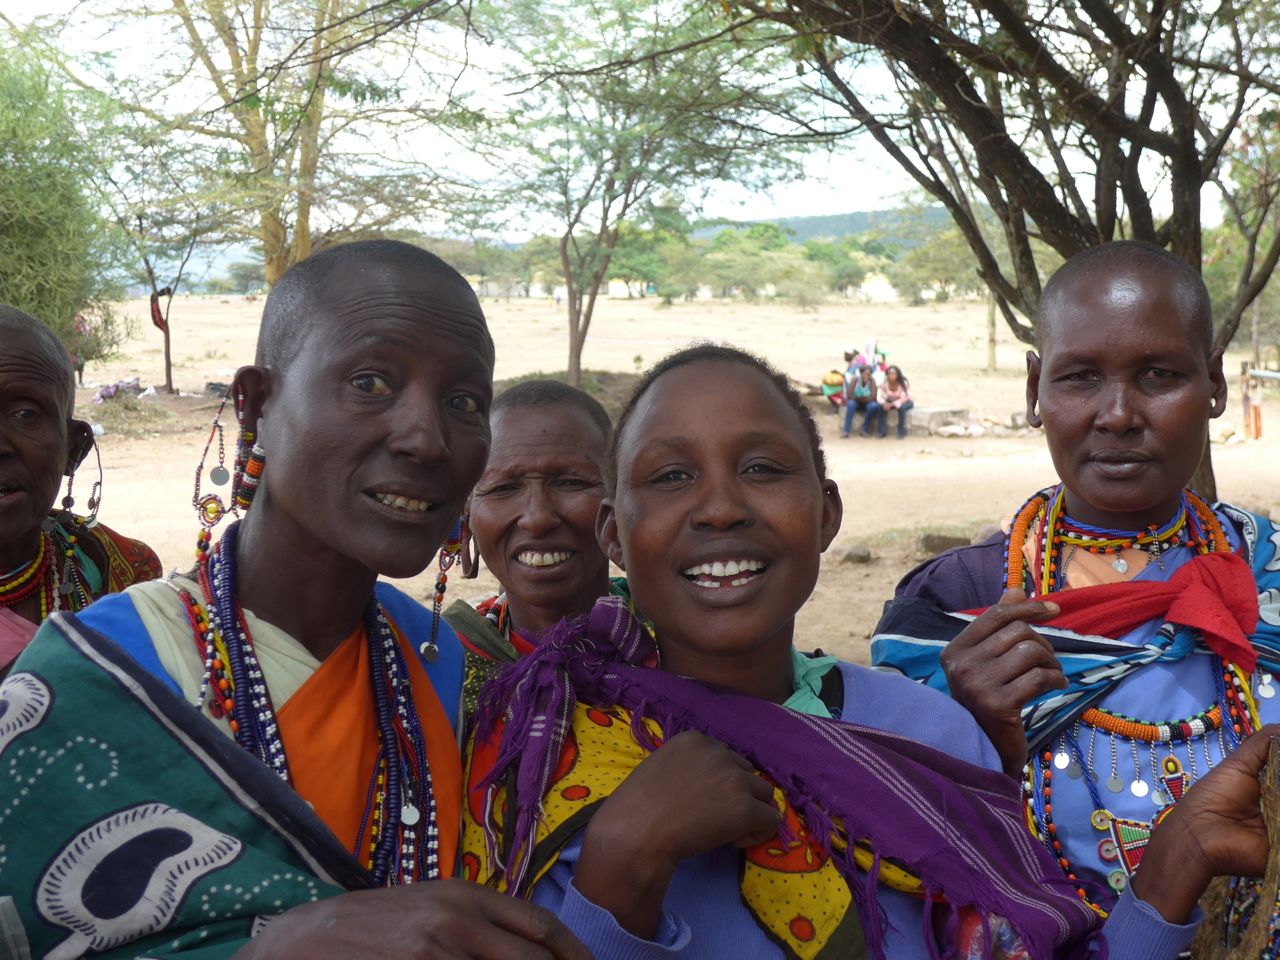 As mulheres Masai na entrada do Parque Nacional Masai Mara.